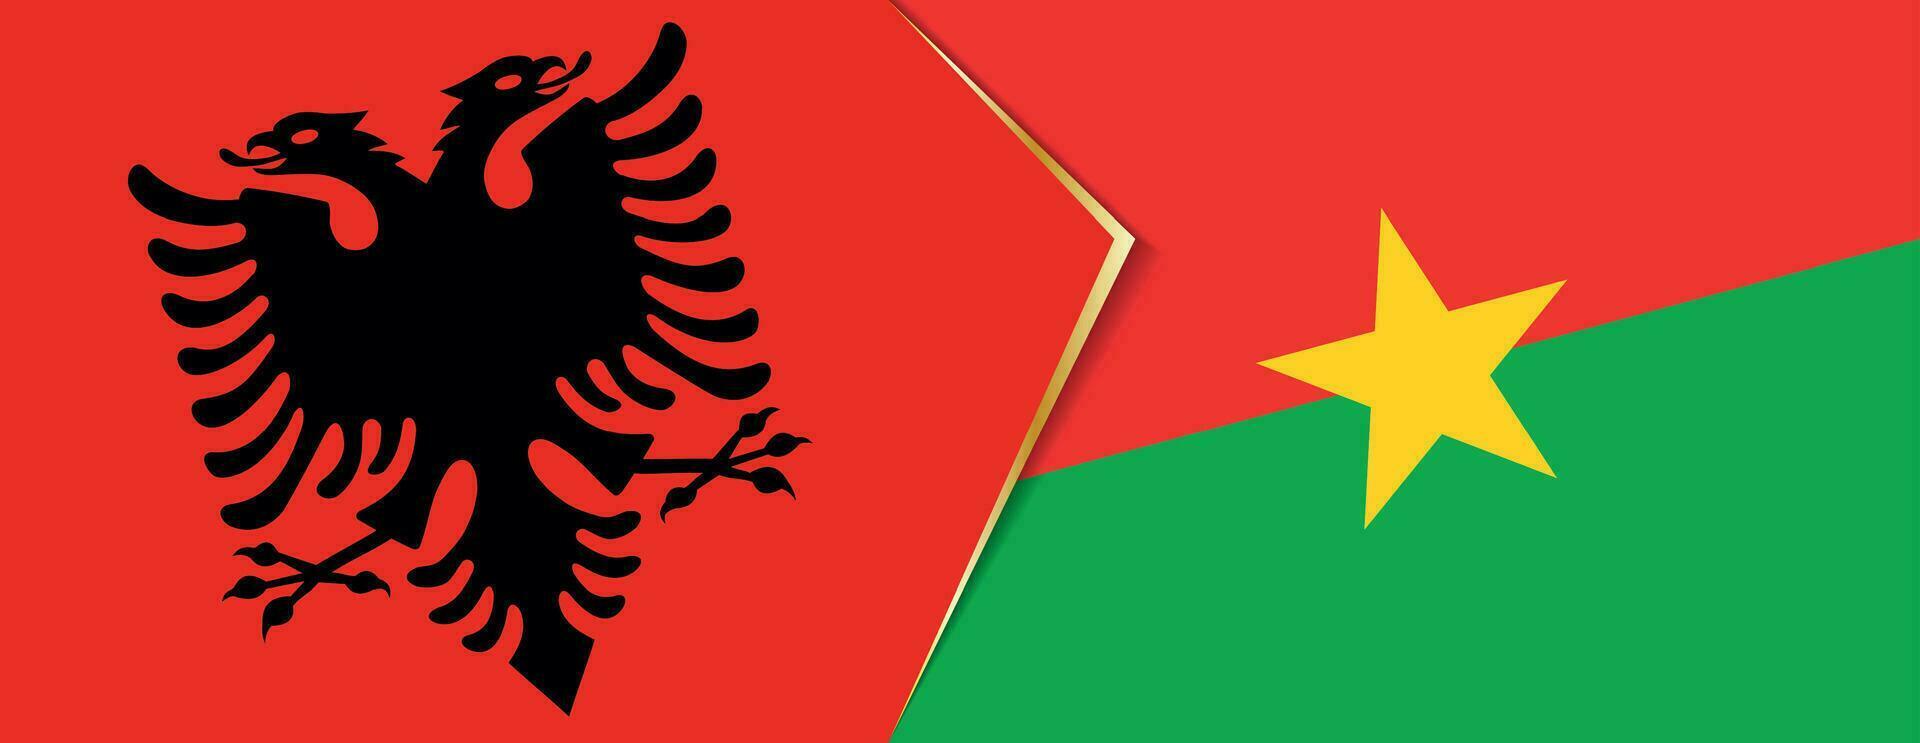 Albania y burkina faso banderas, dos vector banderas